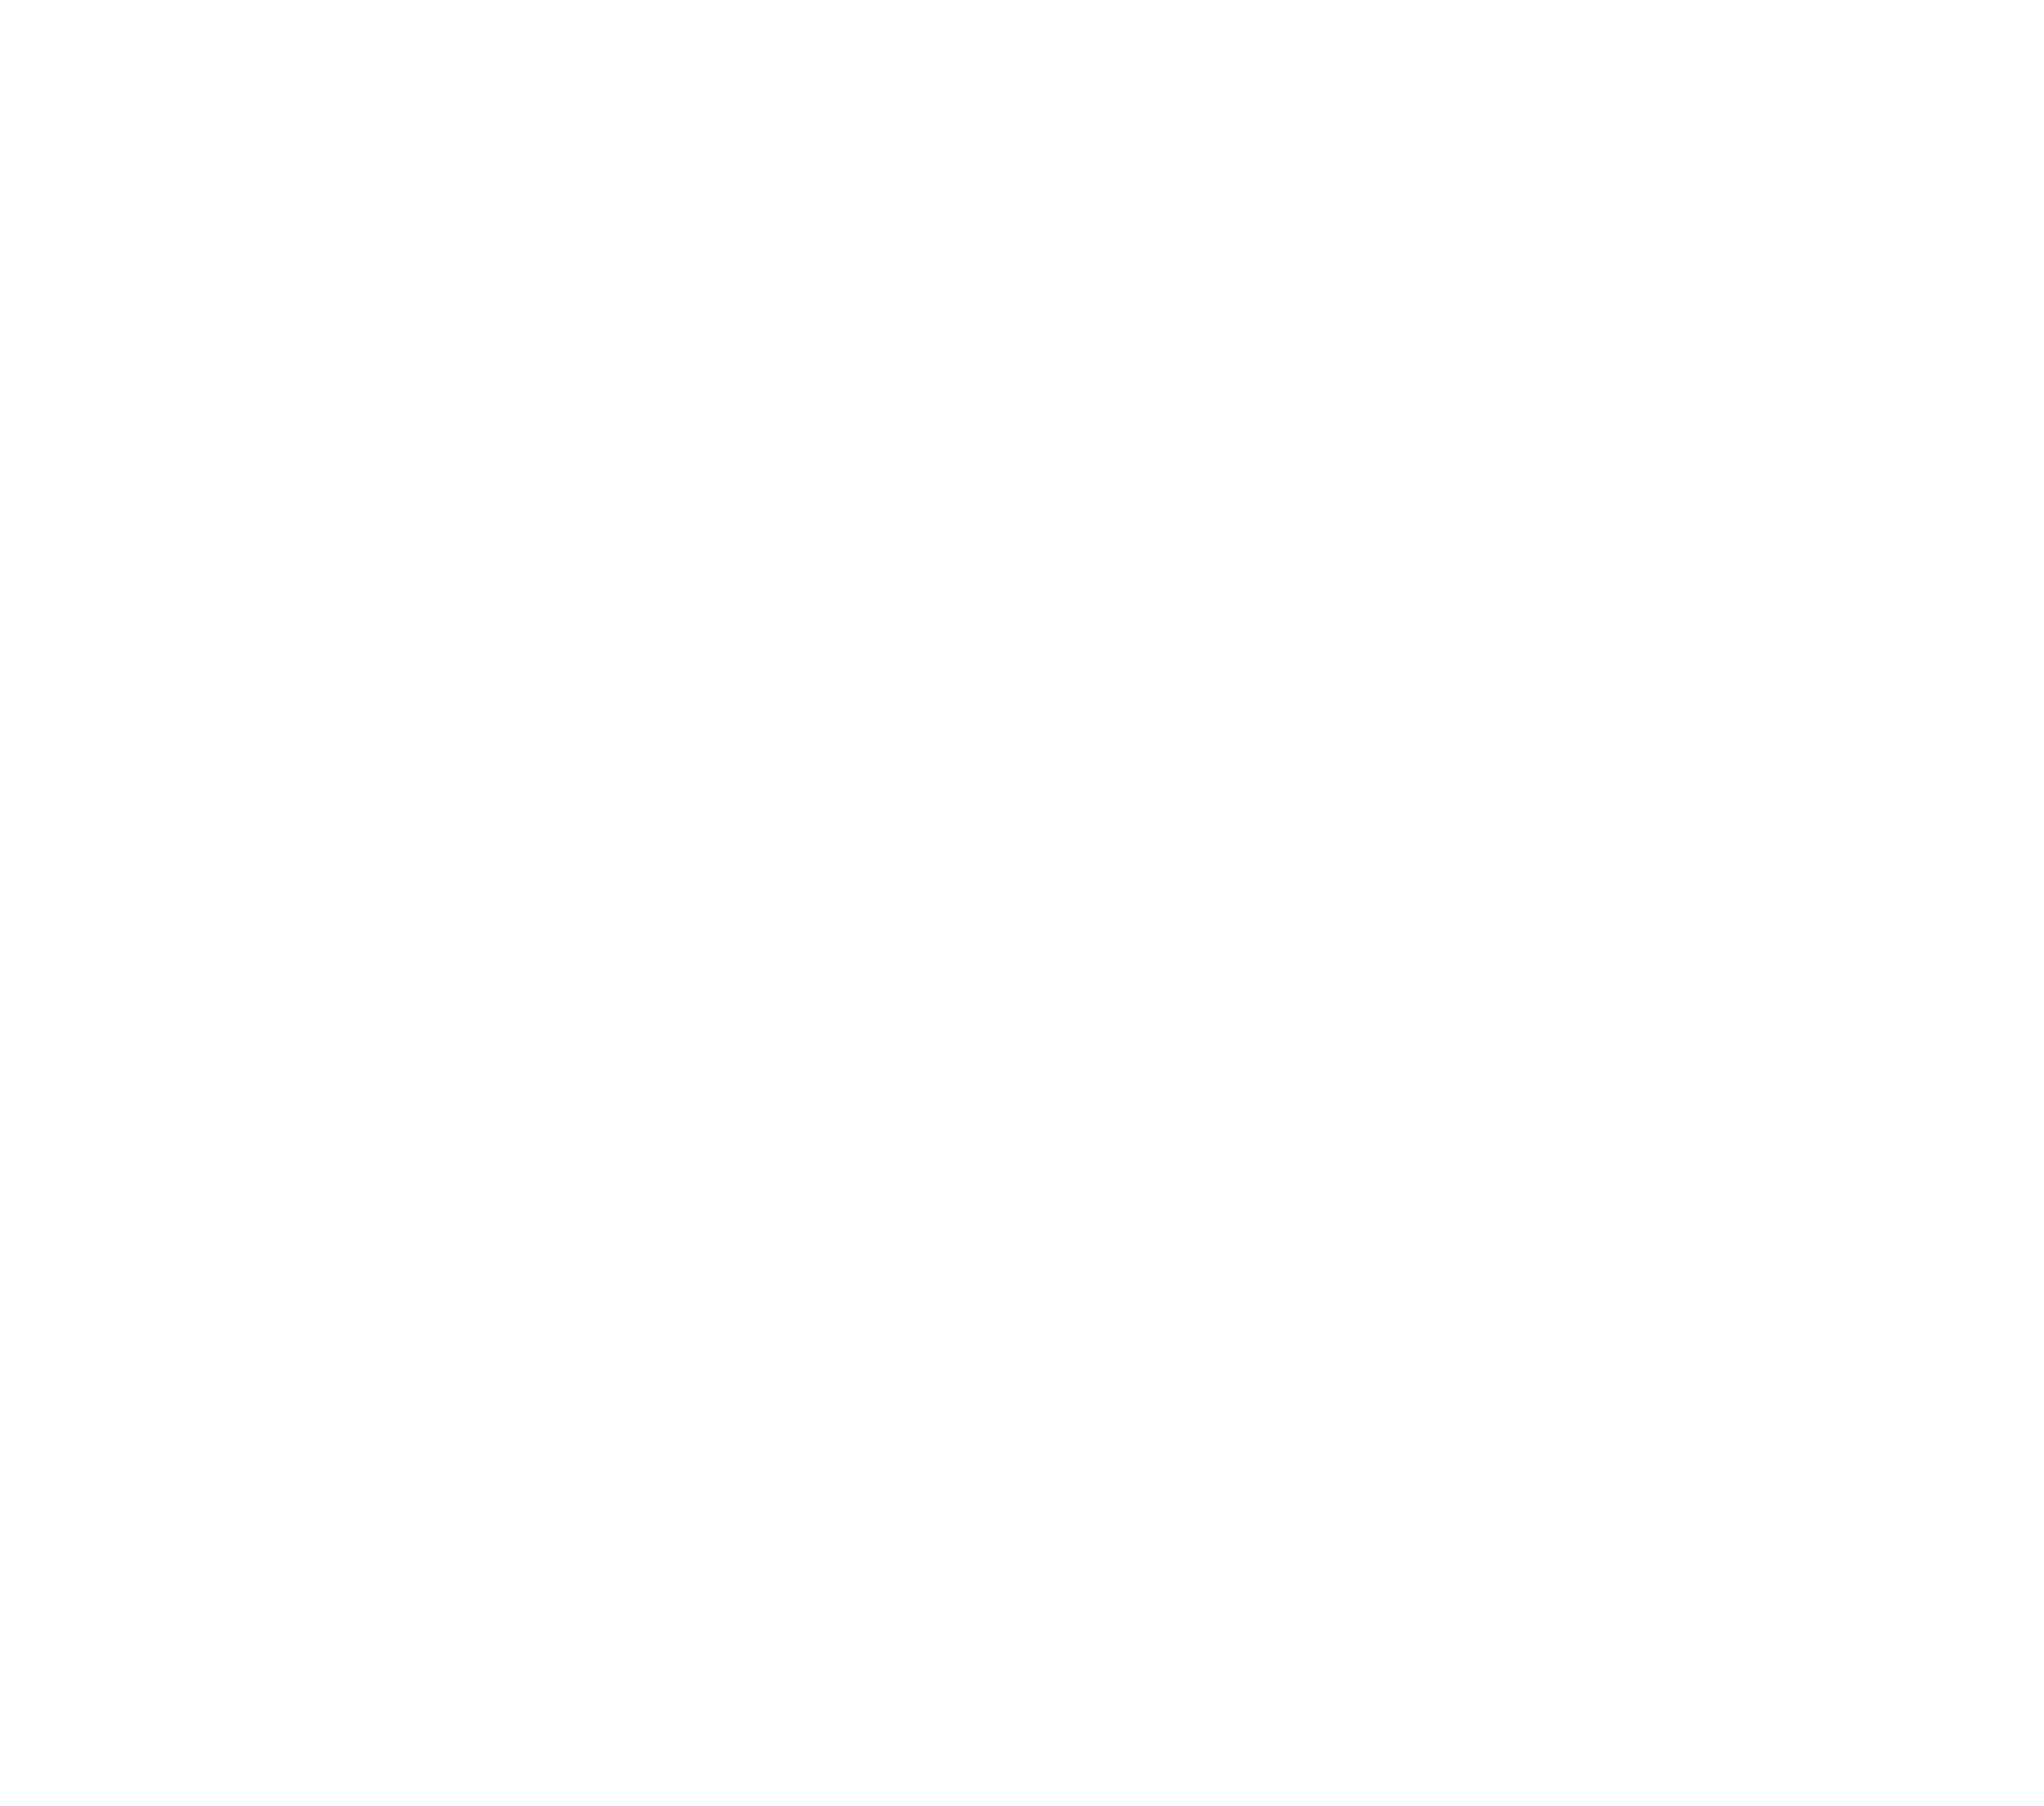 MonkeyMedia